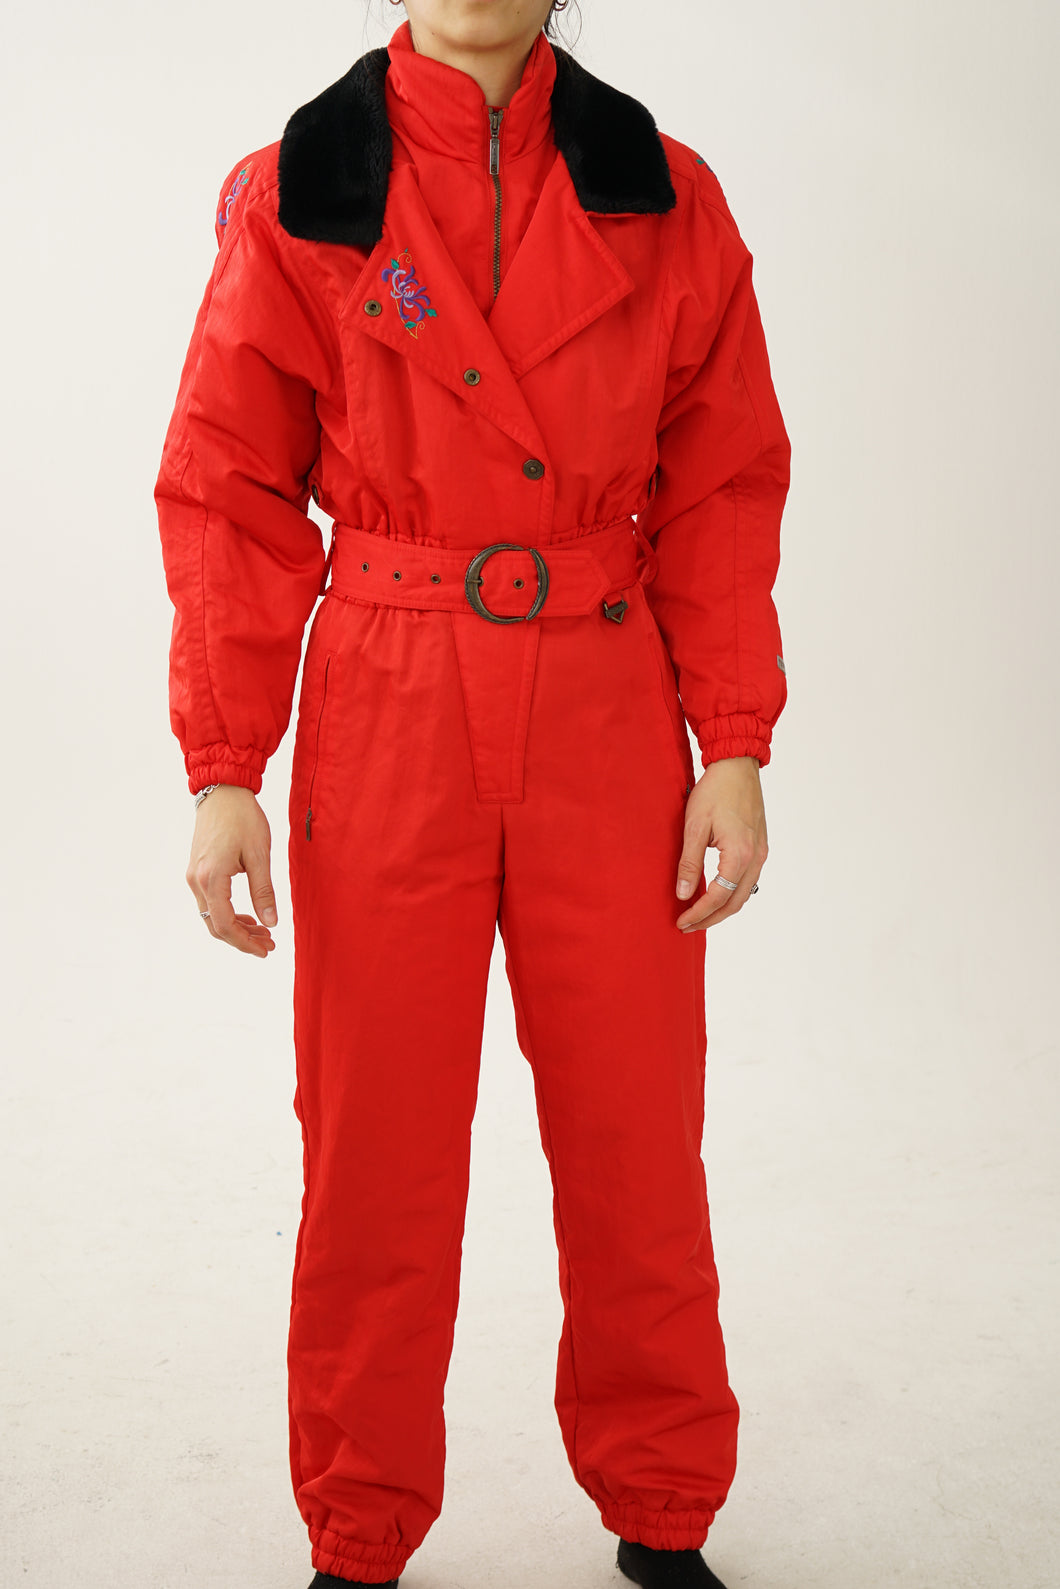 Vintage one piece Fera ski suit, snow suit rouge avec faux et broderie taille 8